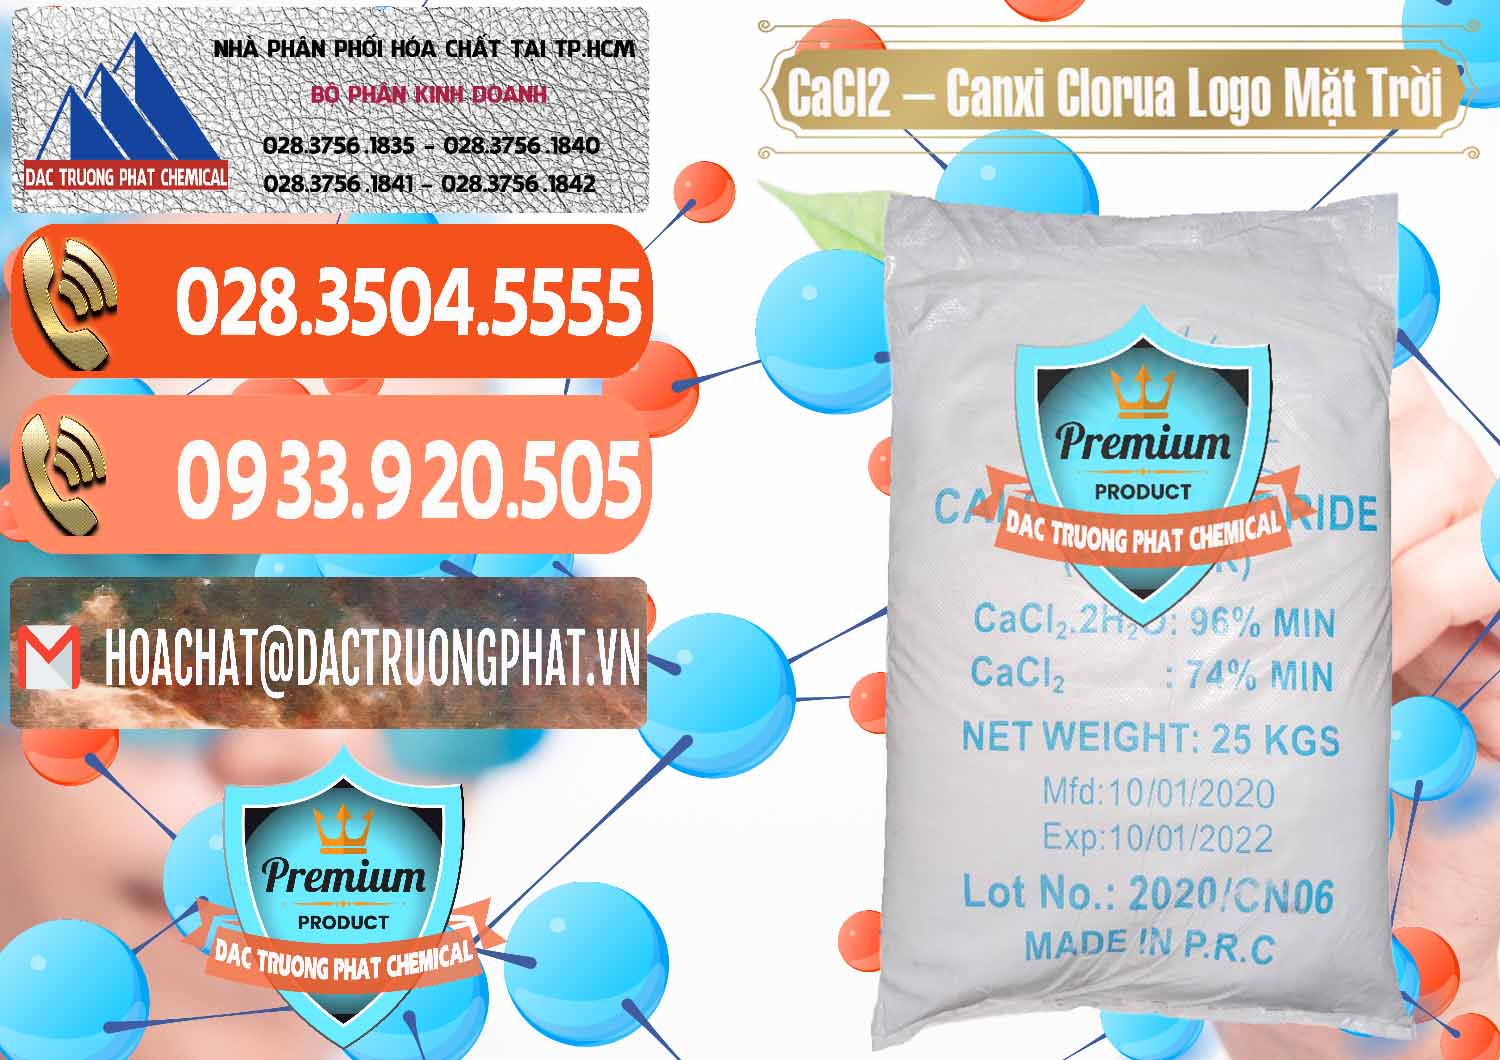 Cty cung cấp & bán CaCl2 – Canxi Clorua 96% Logo Mặt Trời Trung Quốc China - 0041 - Nơi chuyên cung cấp và bán hóa chất tại TP.HCM - hoachatmientay.com